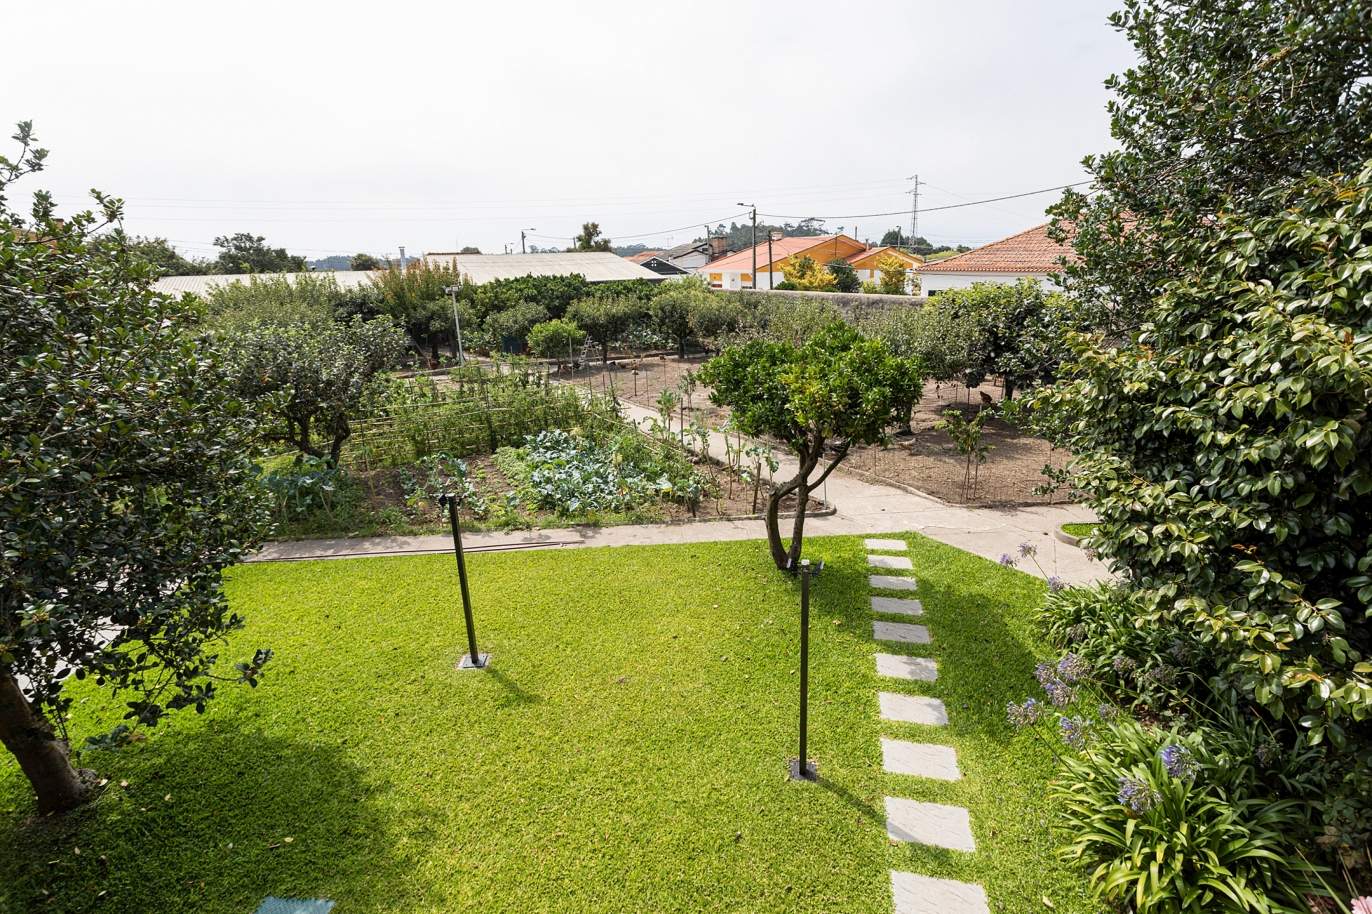 Moradia renovada com jardim, para venda, próxima das praias em Lavra_177144